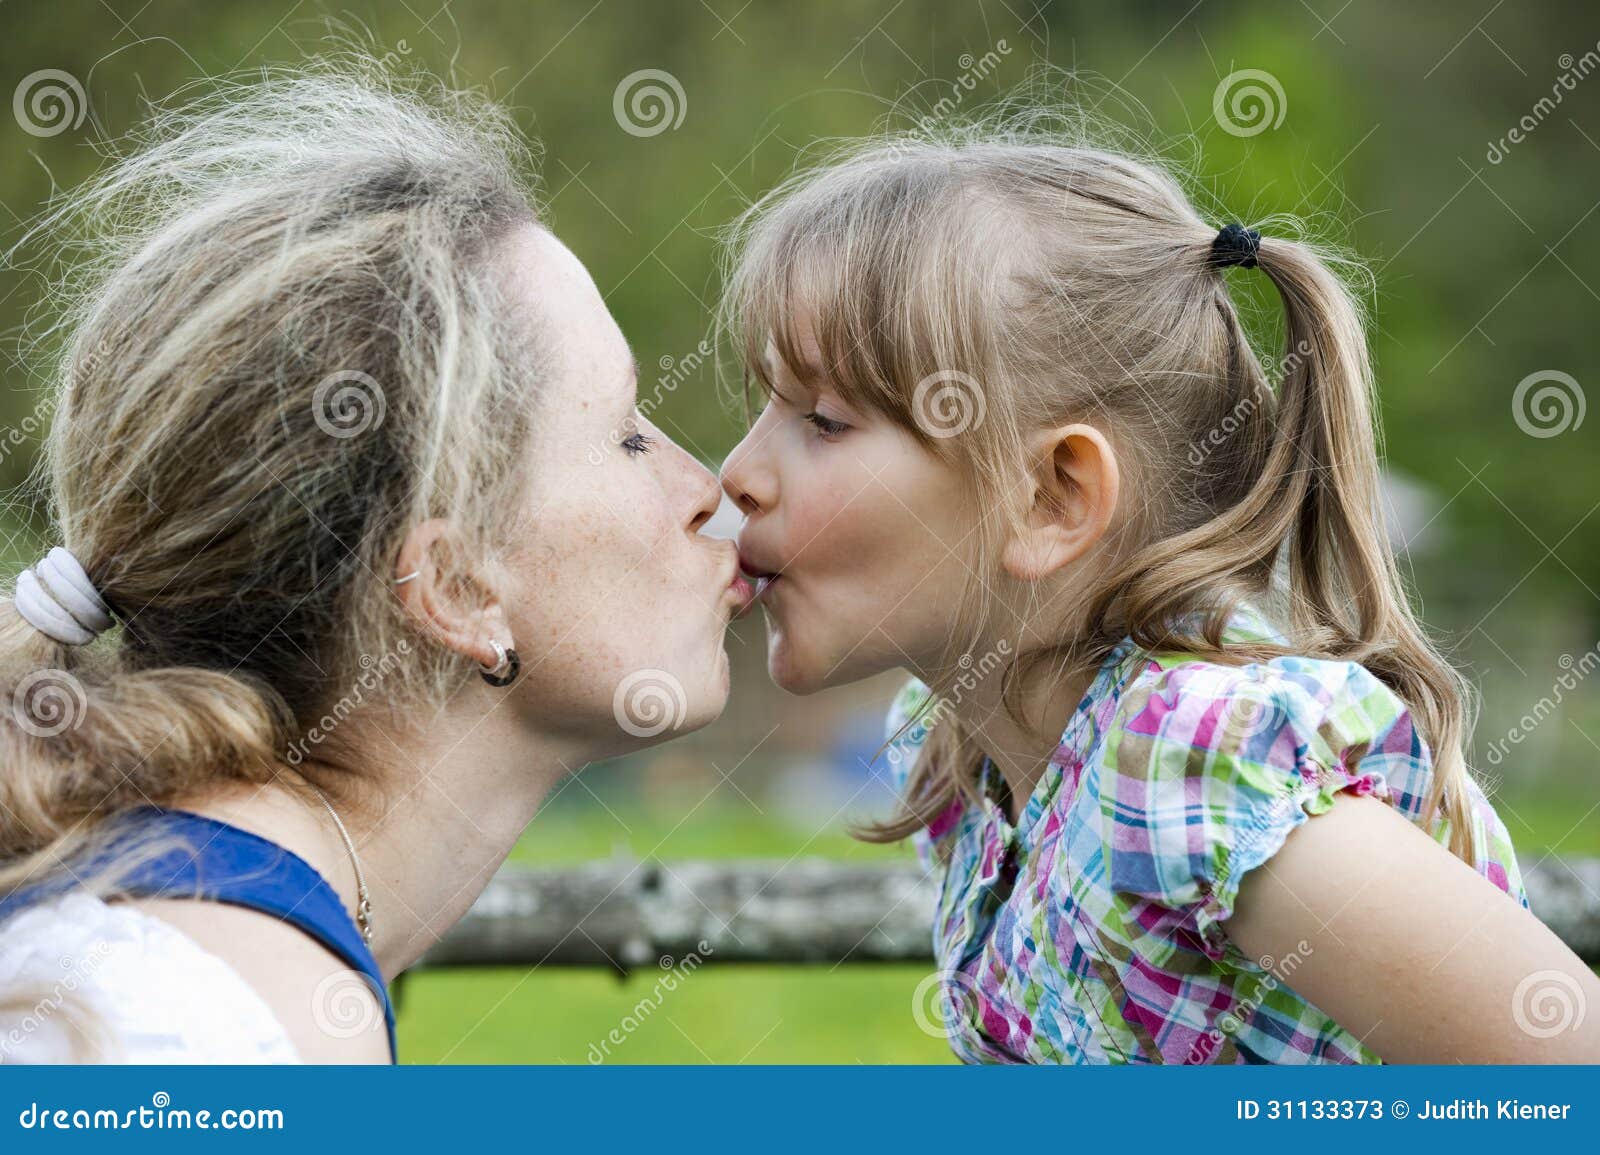 Лижет внучке видео. Мать целует дочь. Мать и дочь поцелуй. Мама с дочкой поцелуи с языком.